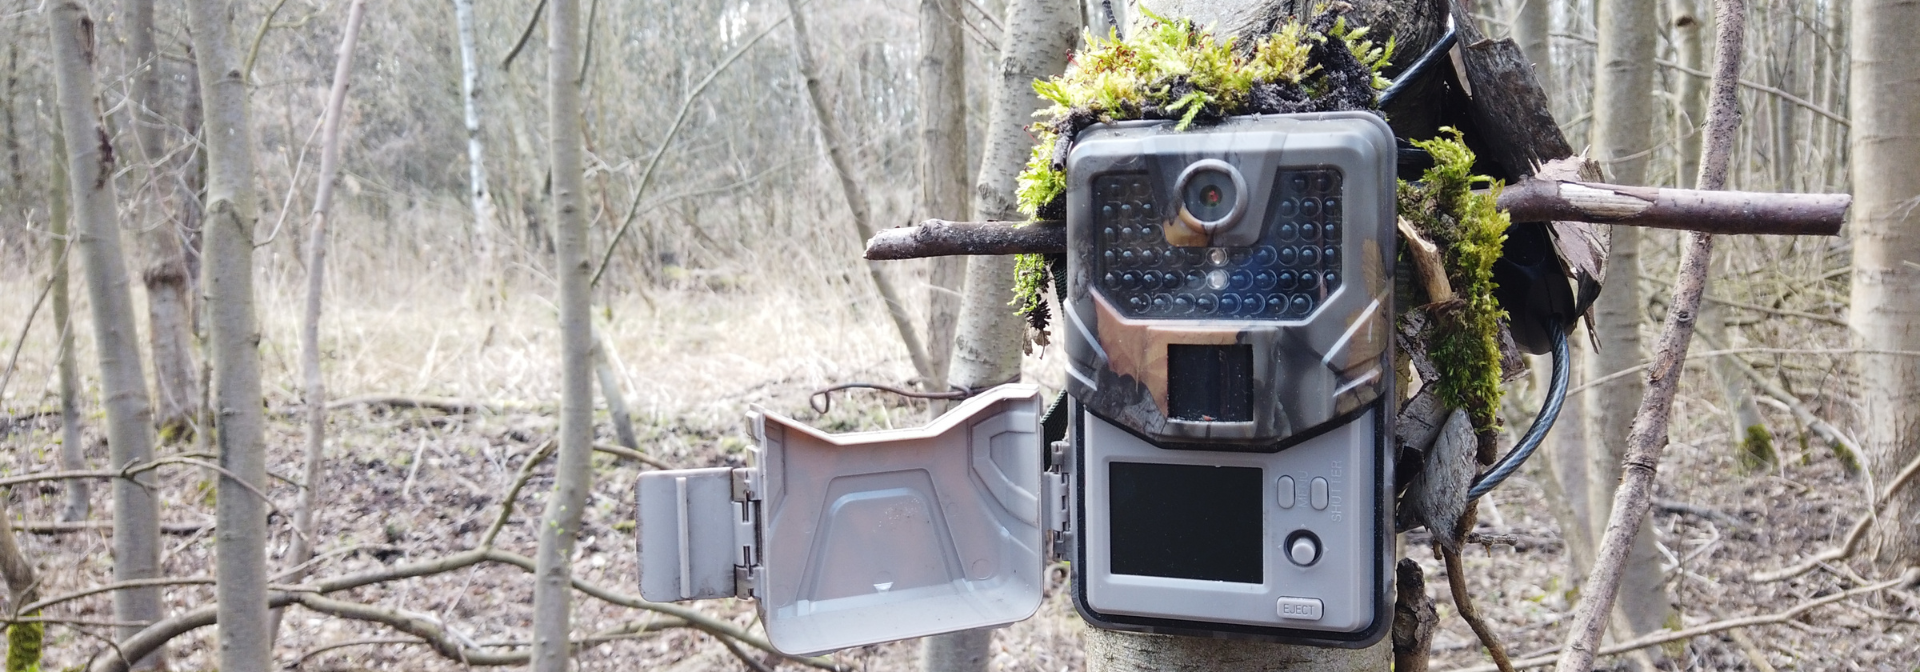 jak zakładać fotopułapkę w lesie, jak montować fotopułapki w lesie, szukam w lesie, Mikołaj Basiński